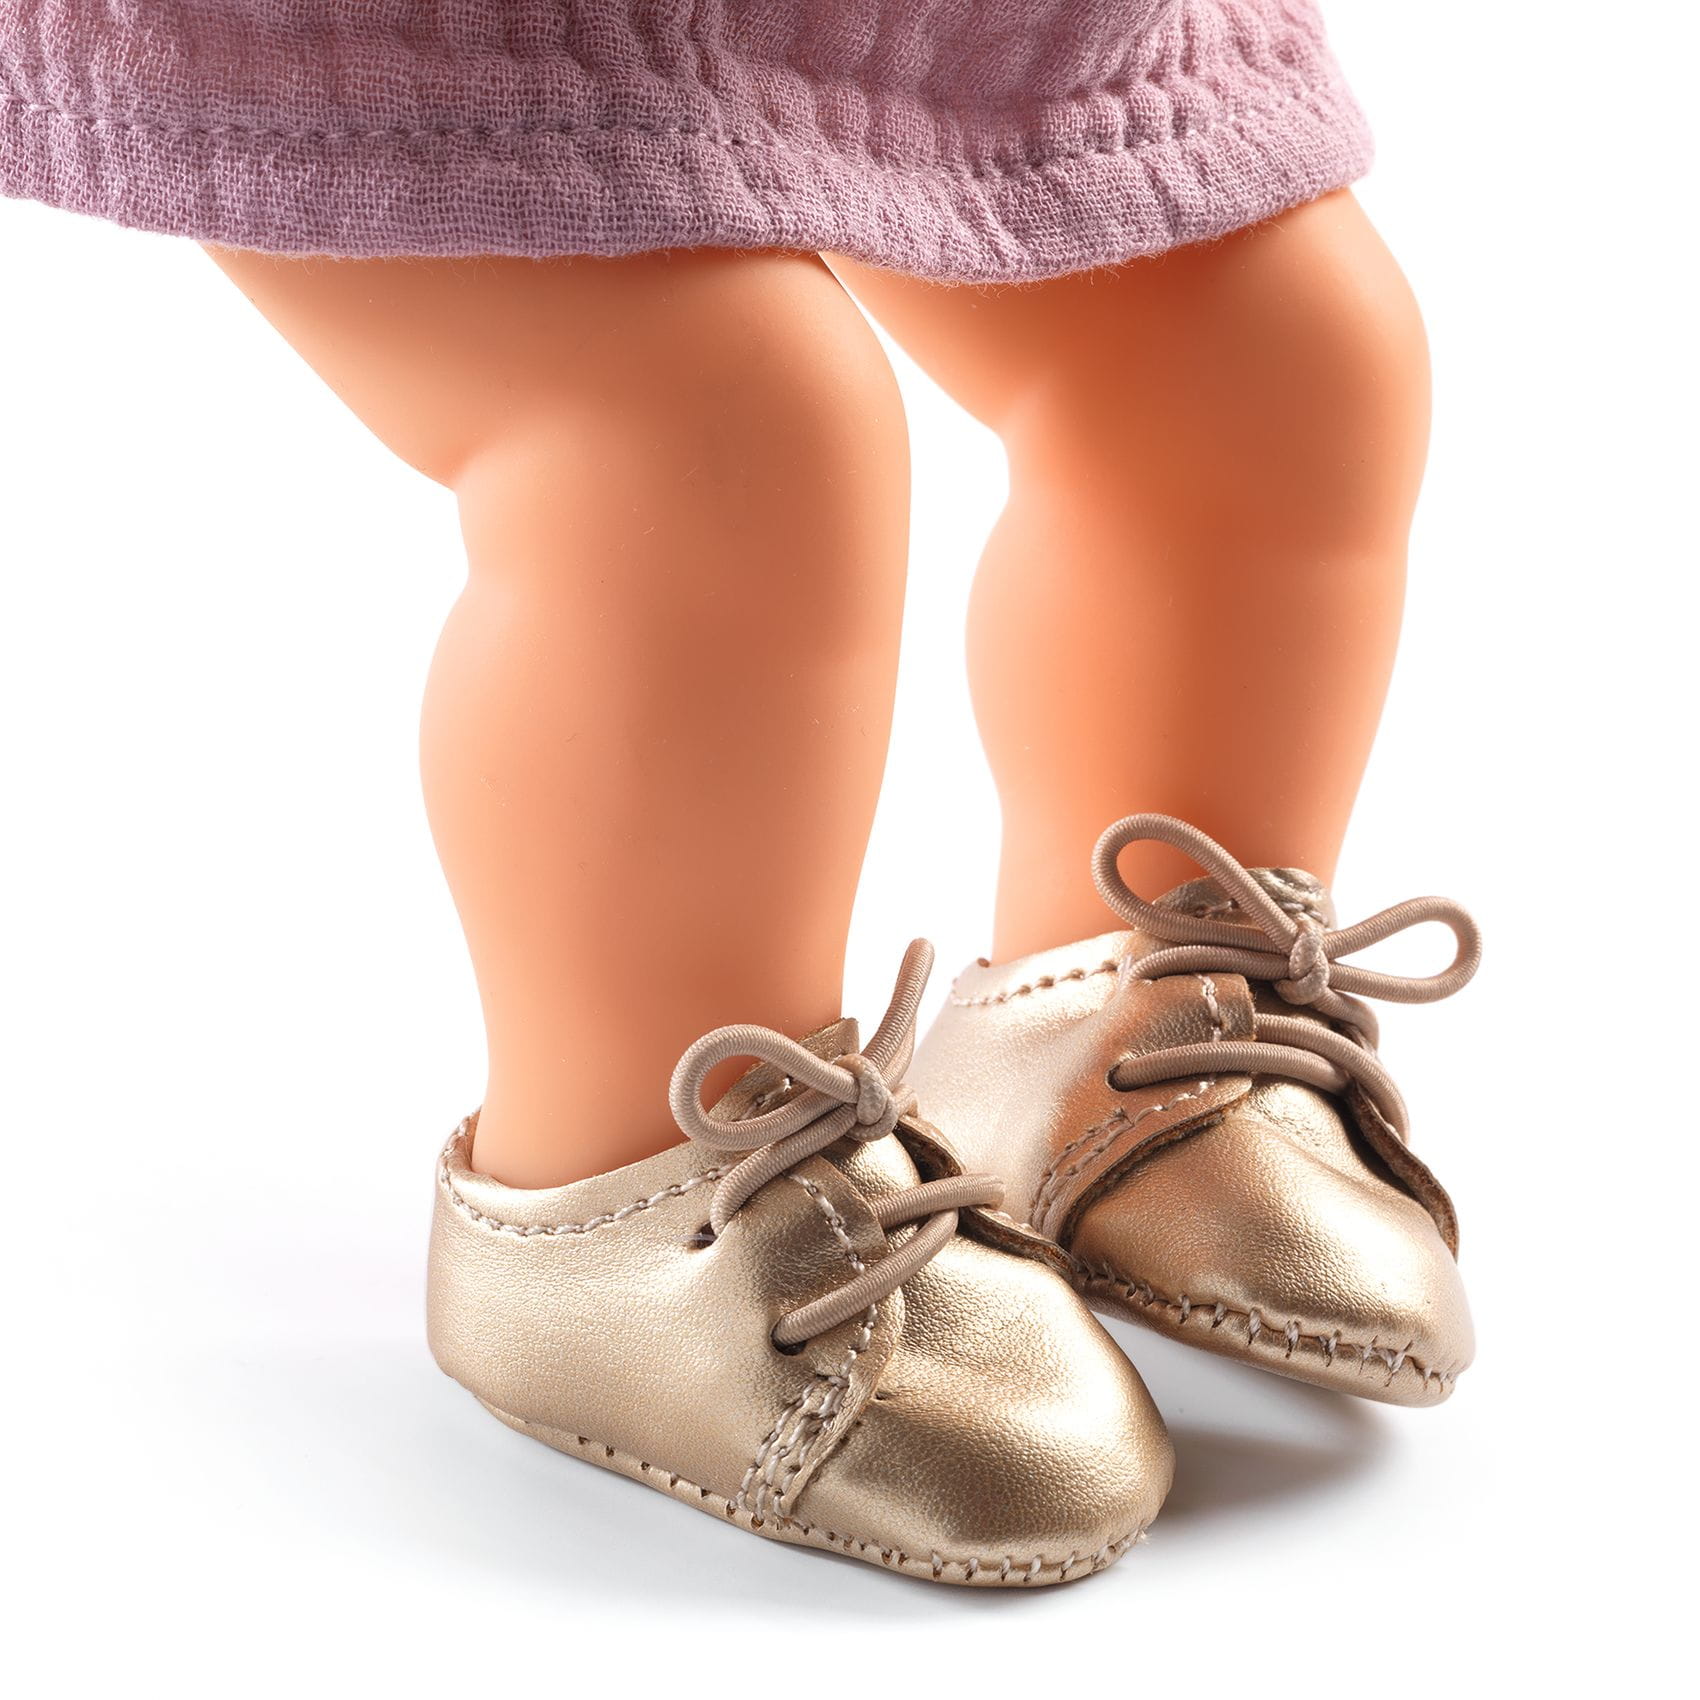 Poma: Goldene Schuhe für Puppen